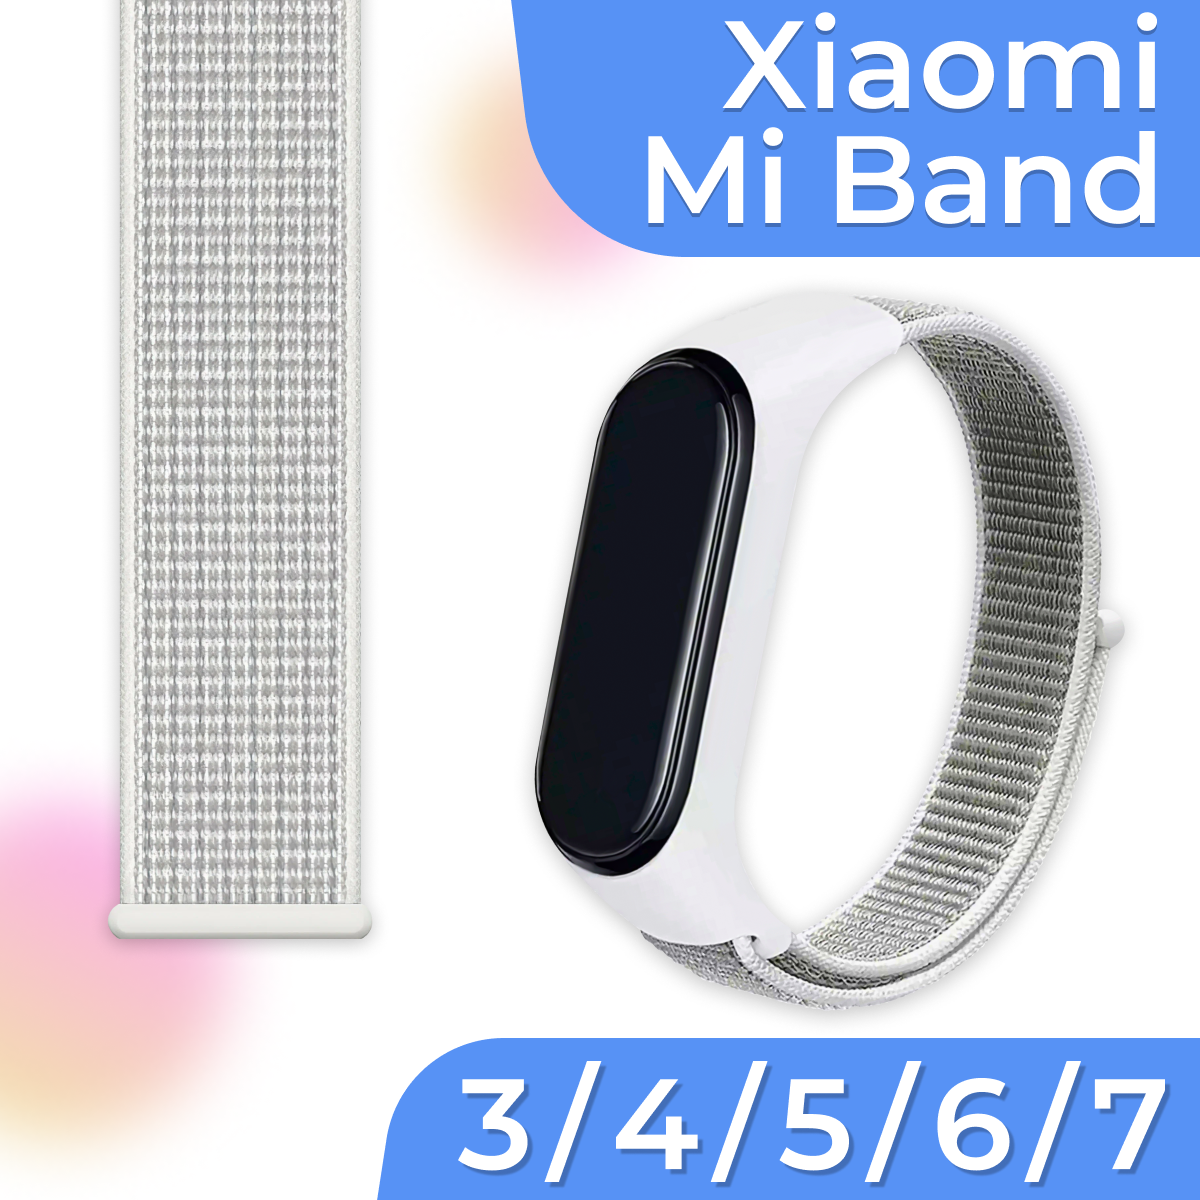 Нейлоновый браслет для смарт часов Xiaomi Mi Band 3 4 5 6 7 / Белый тканевый ремешок для Сяоми Ми Бэнд 3 4 5 6 7